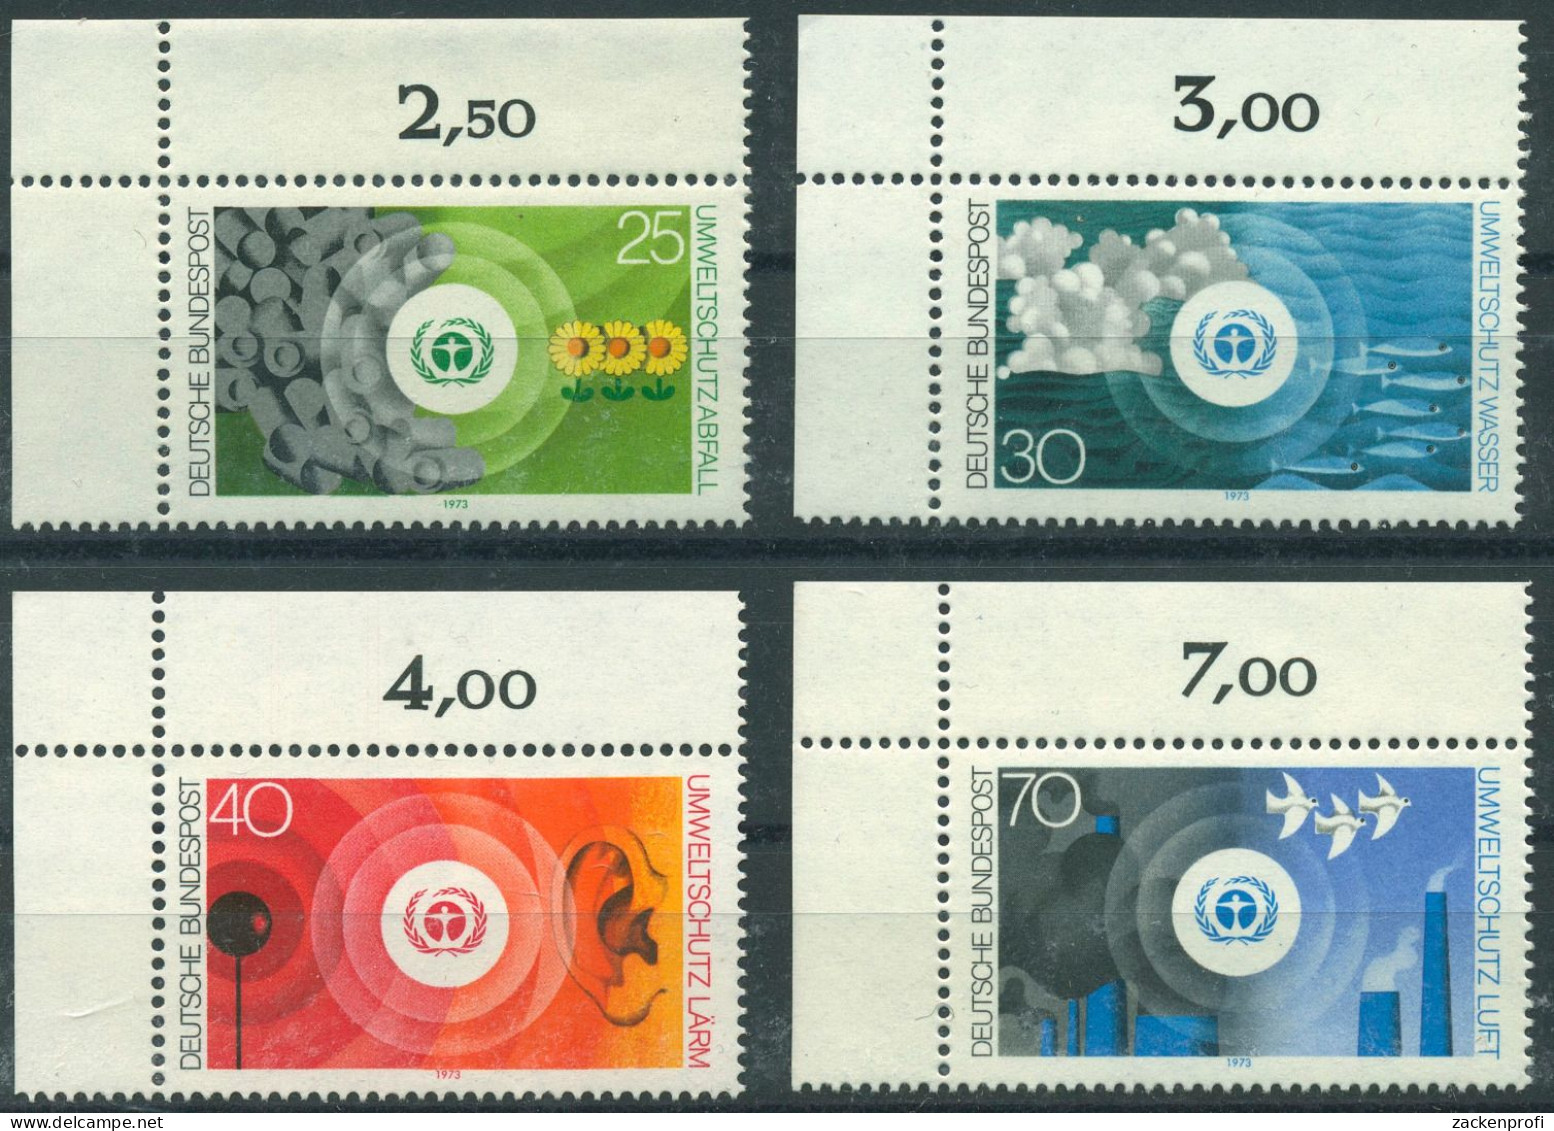 Bund 1973 Umweltschutz 774/77 Ecke 1 Oben Links Postfrisch (E331) - Nuovi